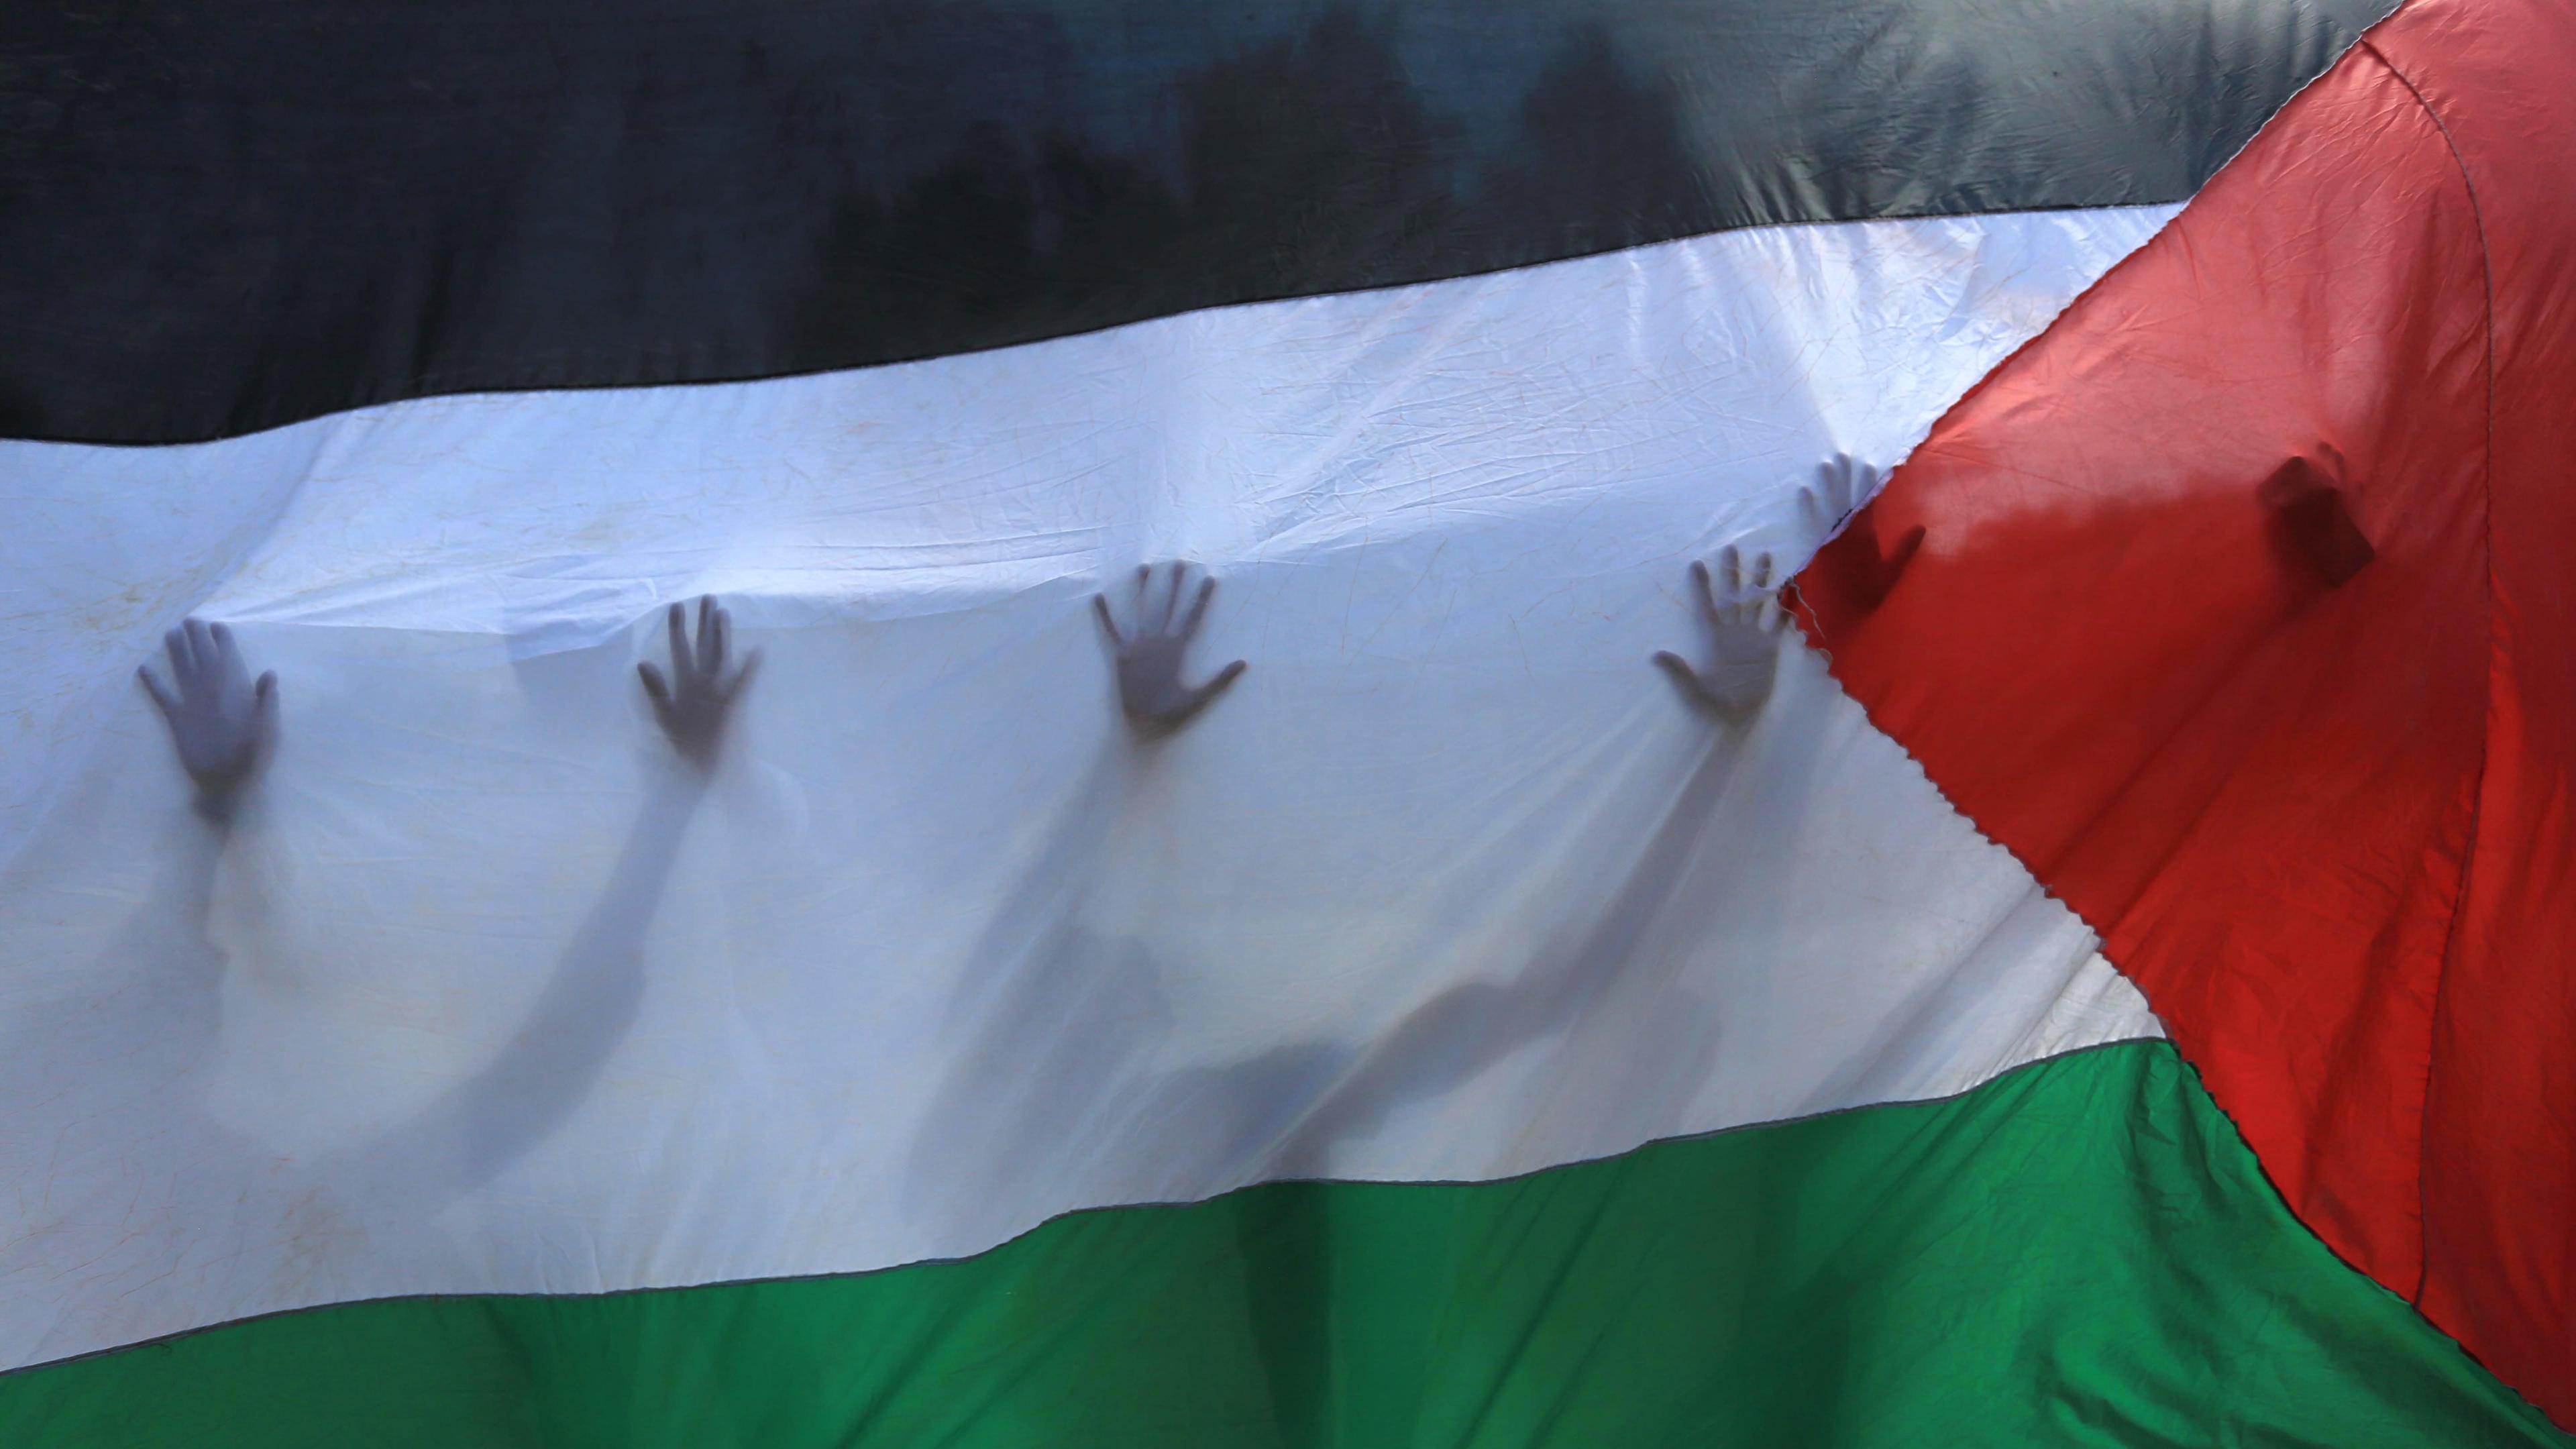 Palästinensische Freiwillige stehen hinter einer palästinensischen Fahne, durch die ihre Silhouetten zu erkennen sind.